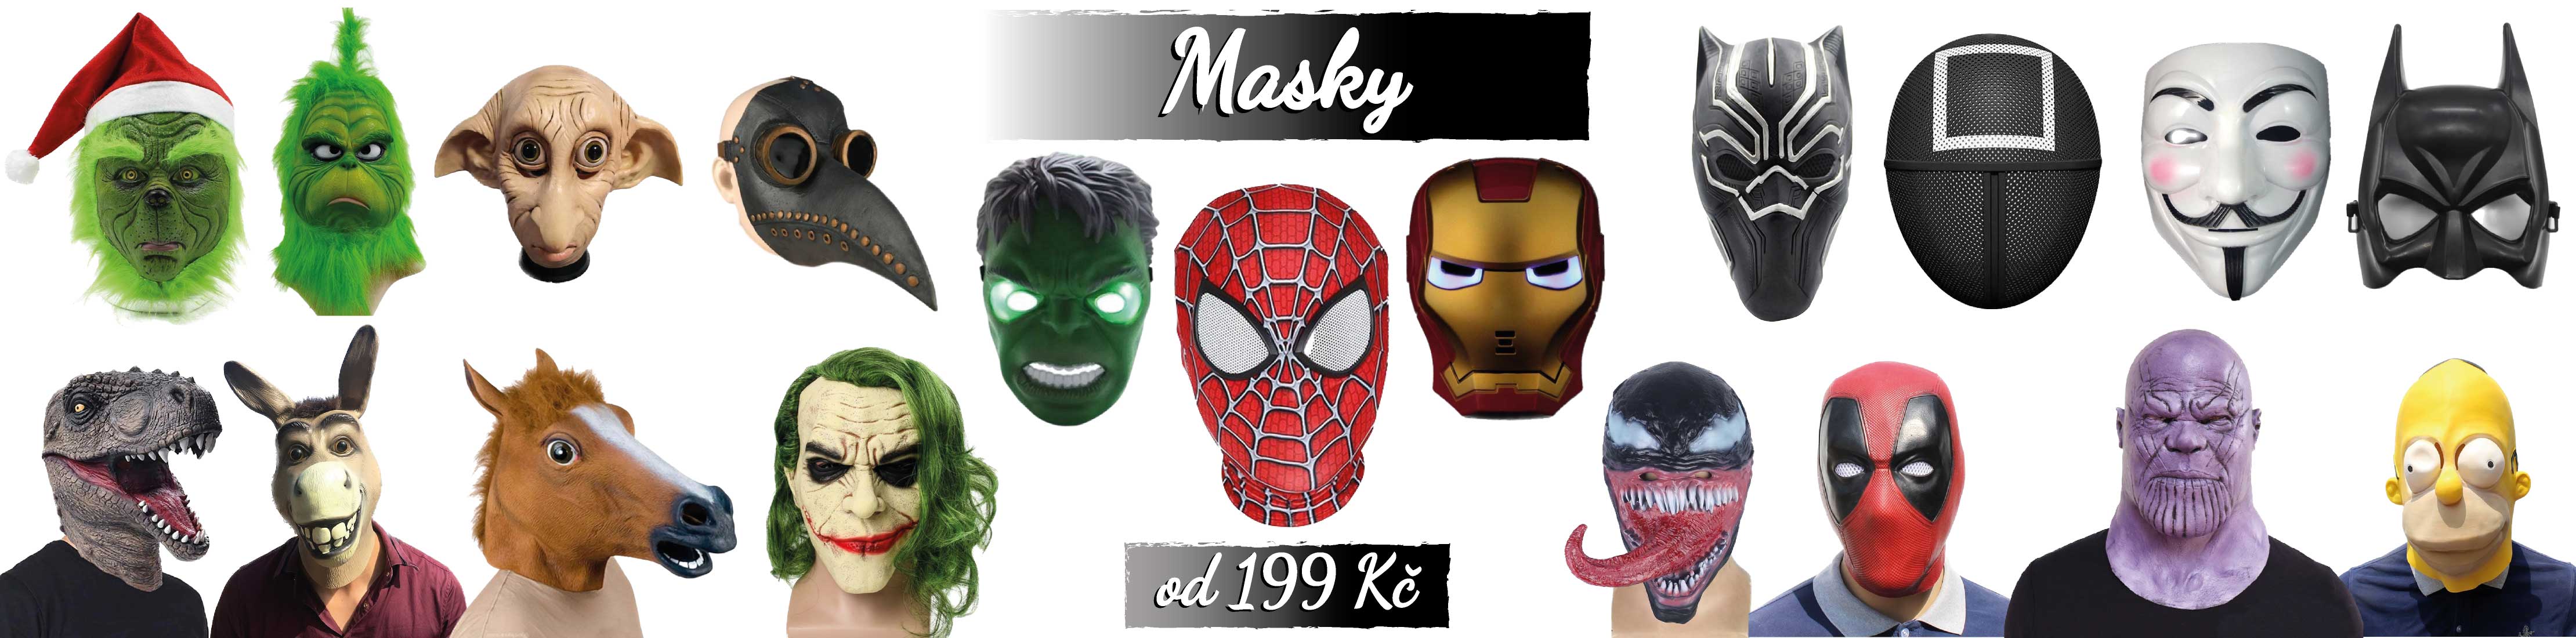 Karnevalové masky